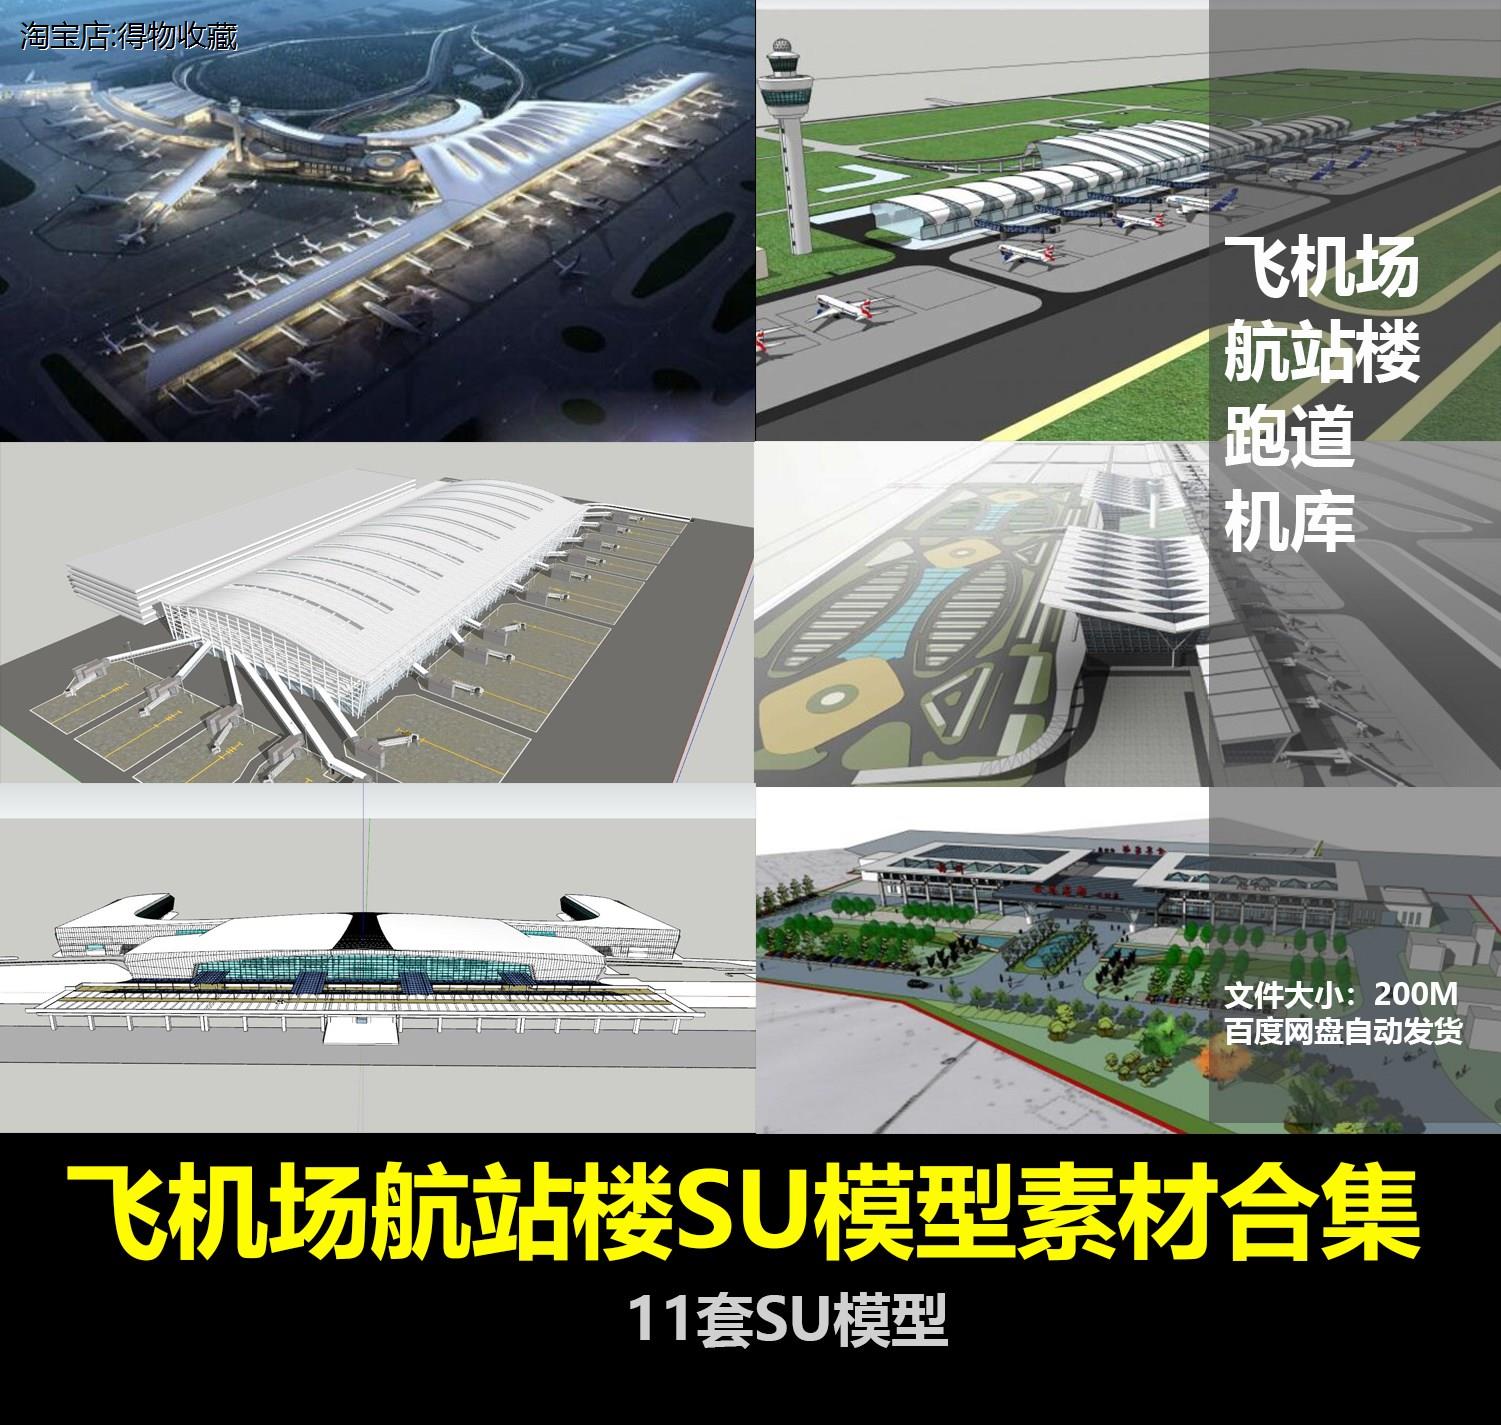 机场航站楼T3内部结构设计飞机场塔台登机口安检设备器材SU模型